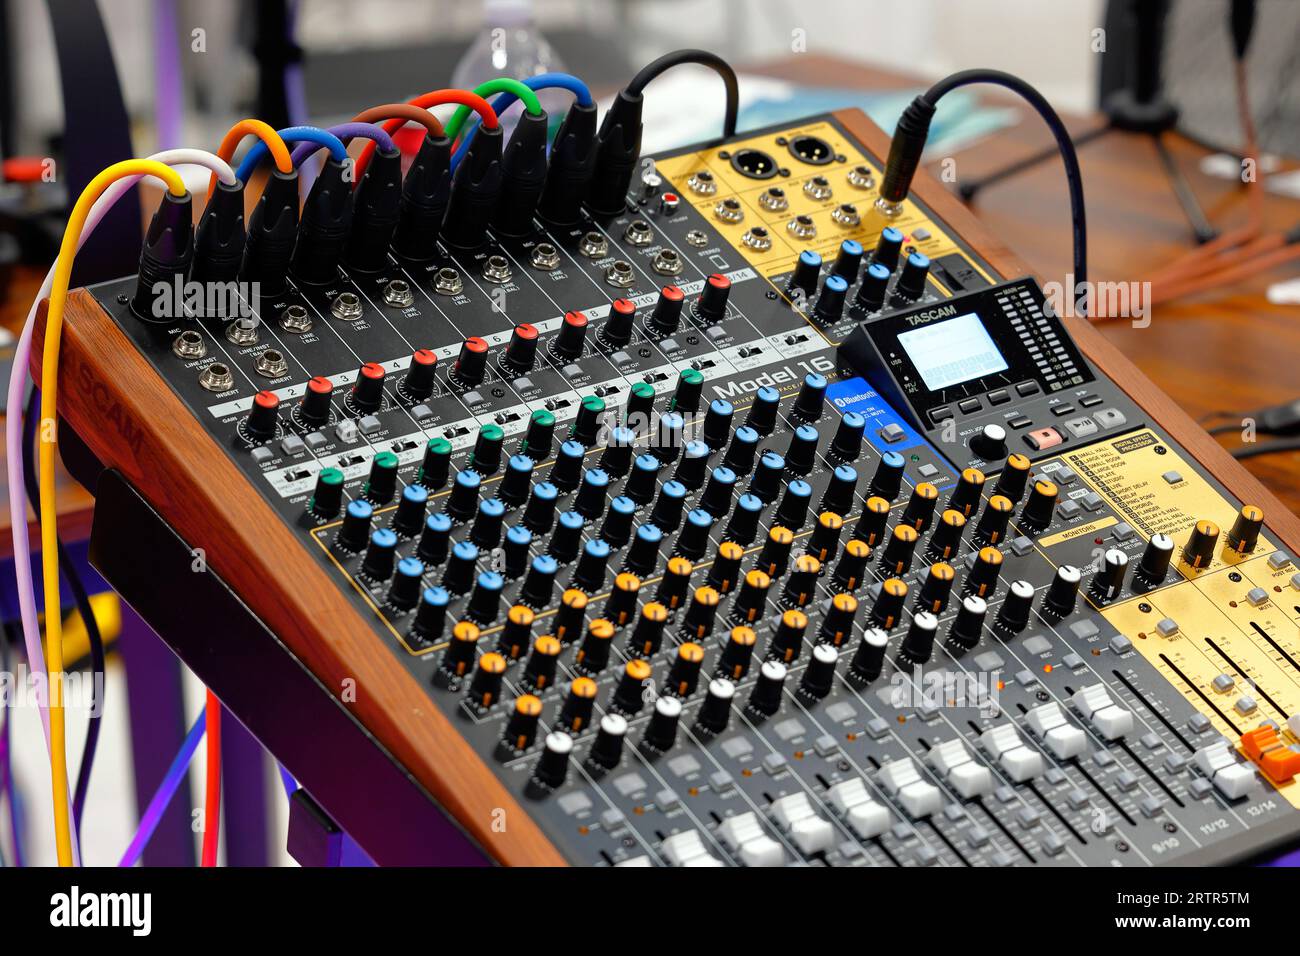 Une interface de mixage studio Tascam modèle 16 et un dispositif d'enregistrement multipiste avec entrées microphone XLR colorées. Banque D'Images